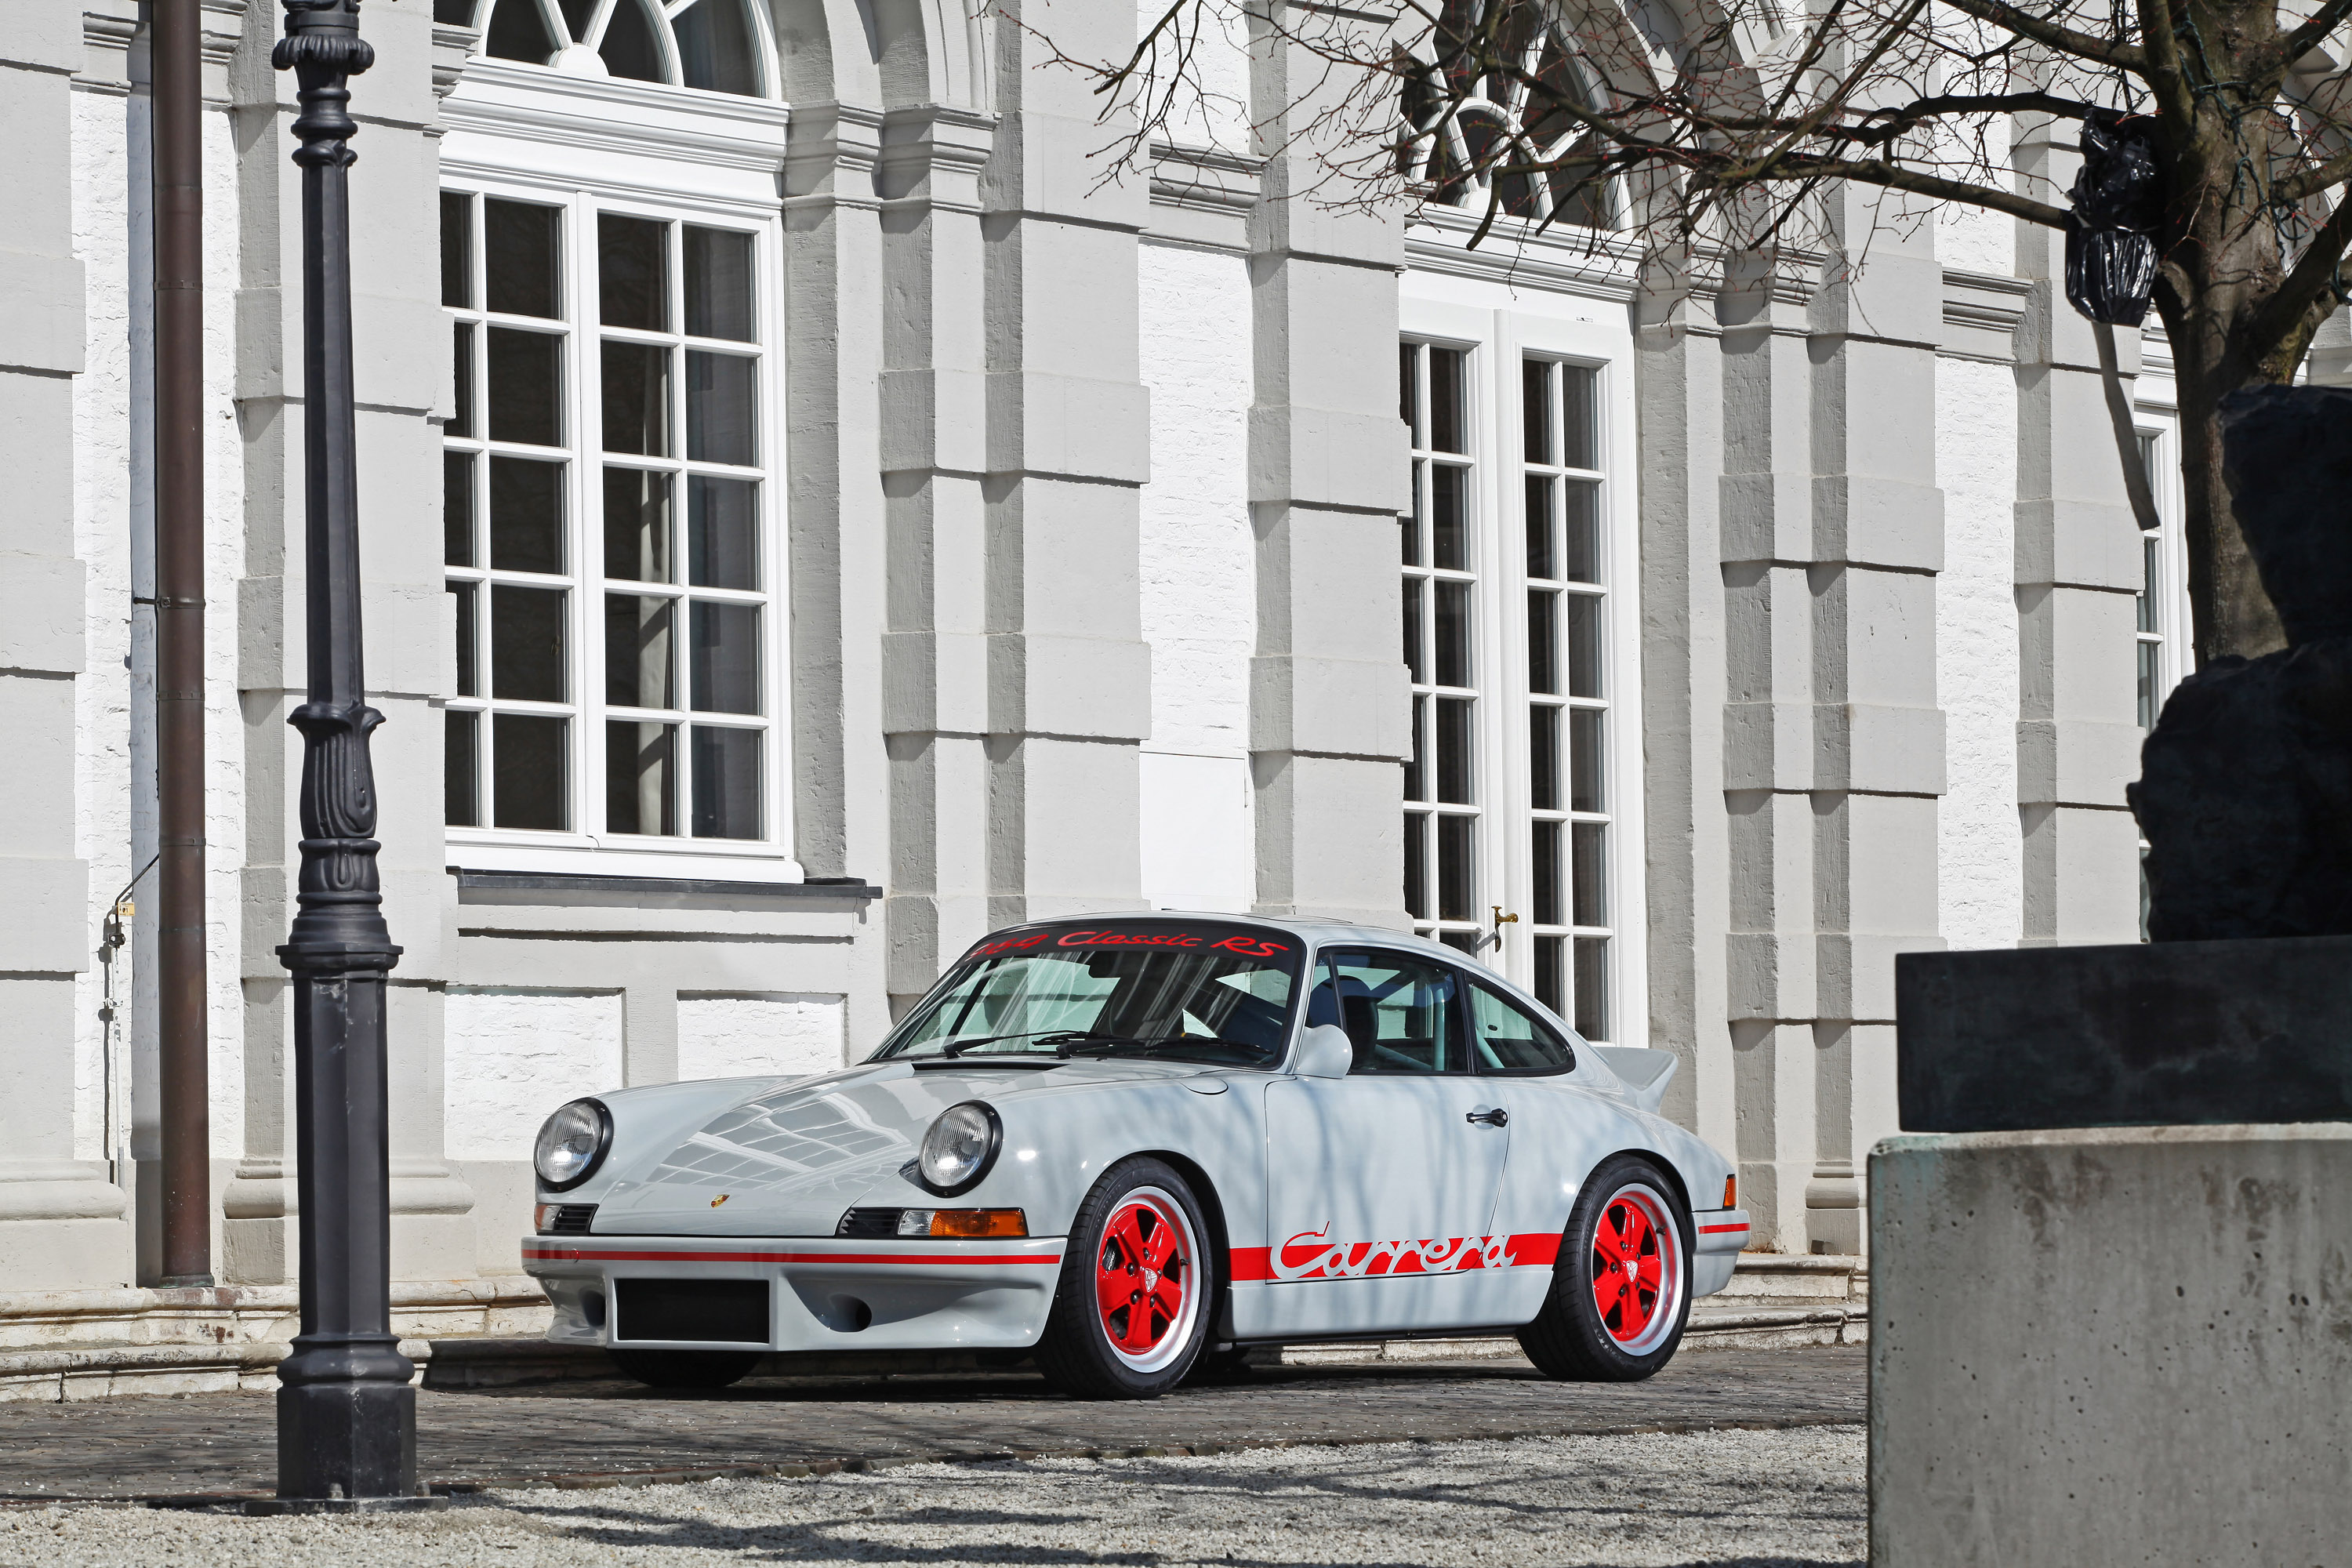 Télécharger des fonds d'écran Porsche 911 Carrera Rs HD